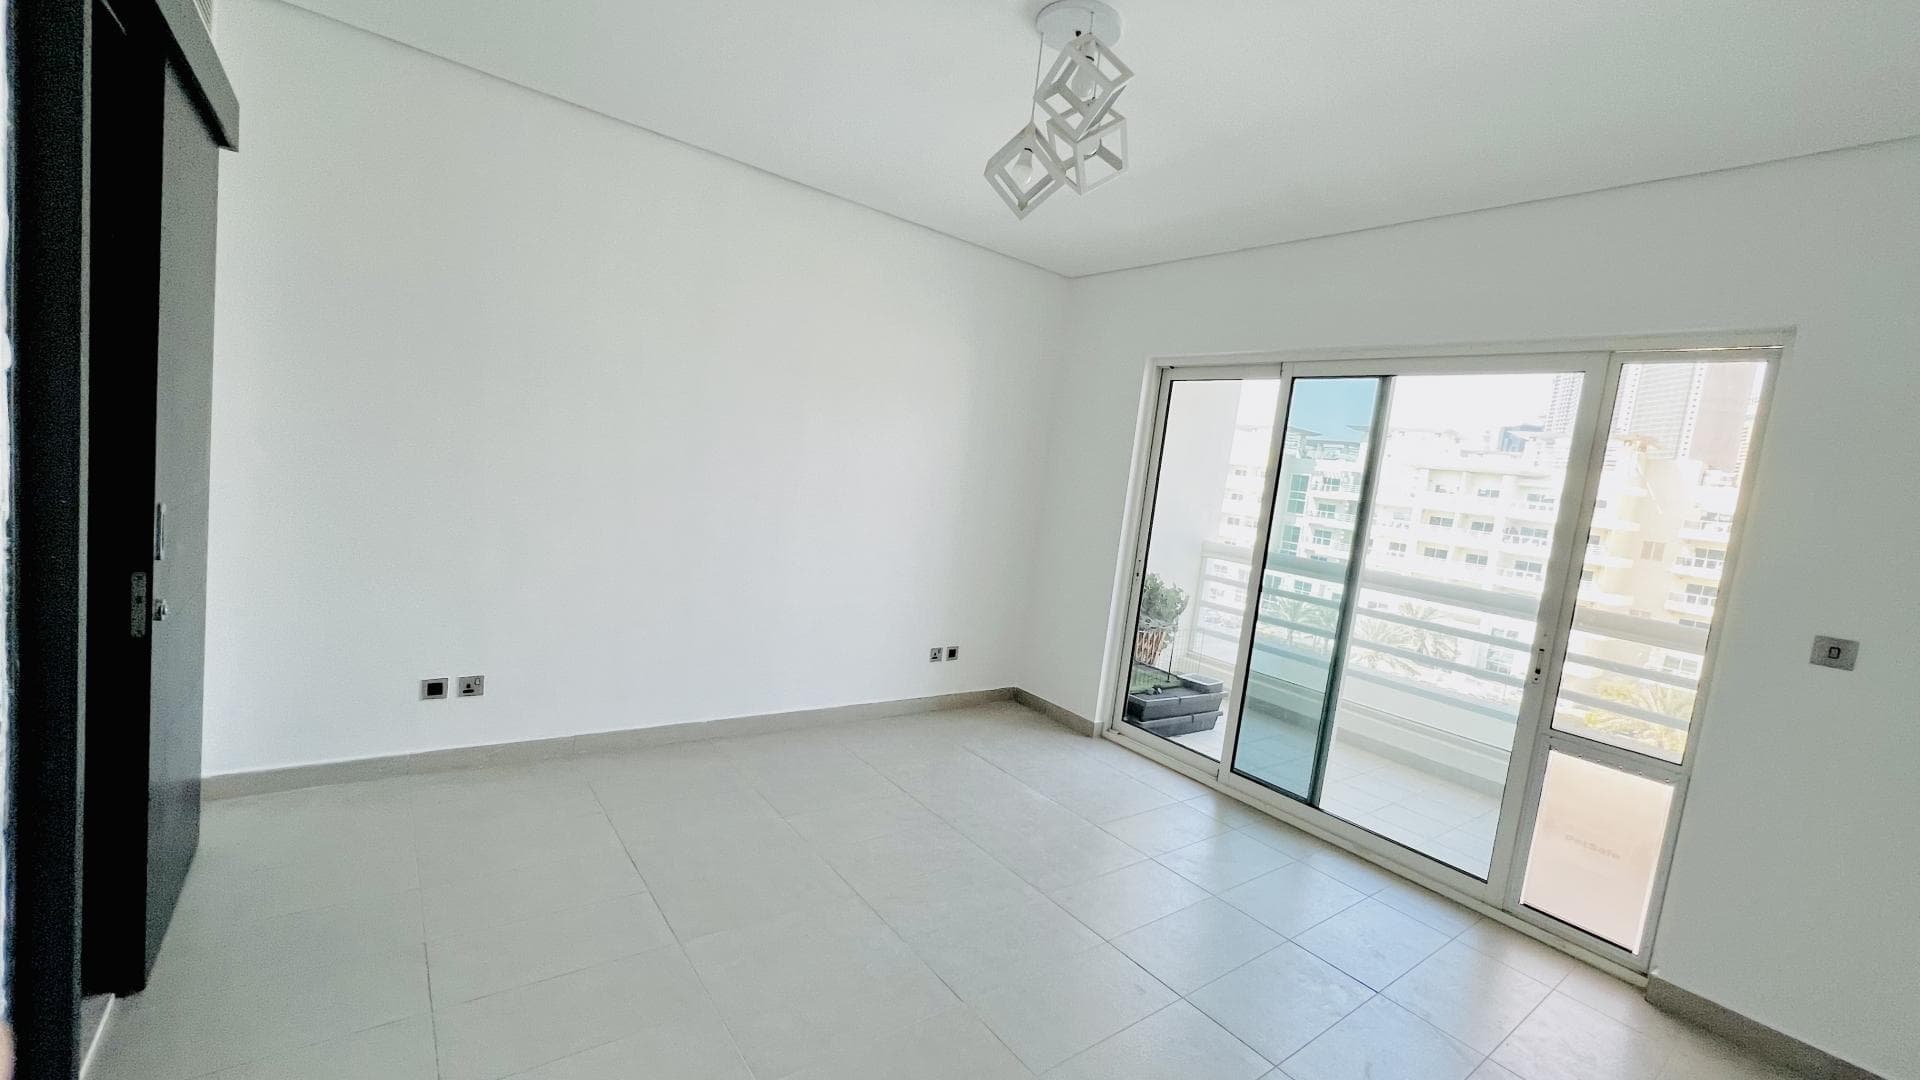 3 Bedroom Apartment For Rent Al Fahad Tower 2 Lp38566 174cc0a5f8032f00.jpg